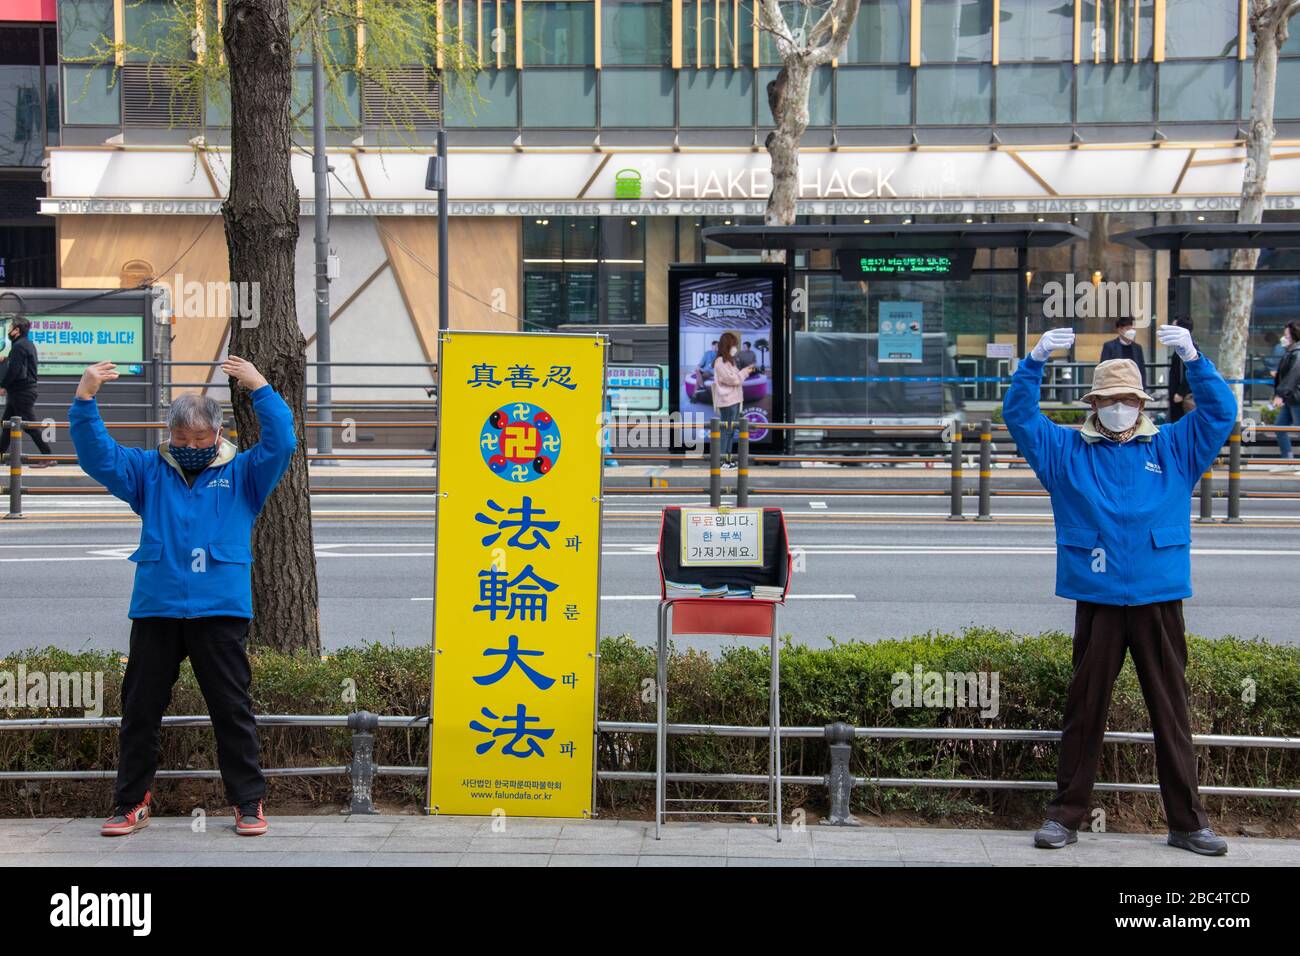 Falun Gong portant des masques pendant la pandémie de Coronavirus, Séoul, Corée du Sud Banque D'Images